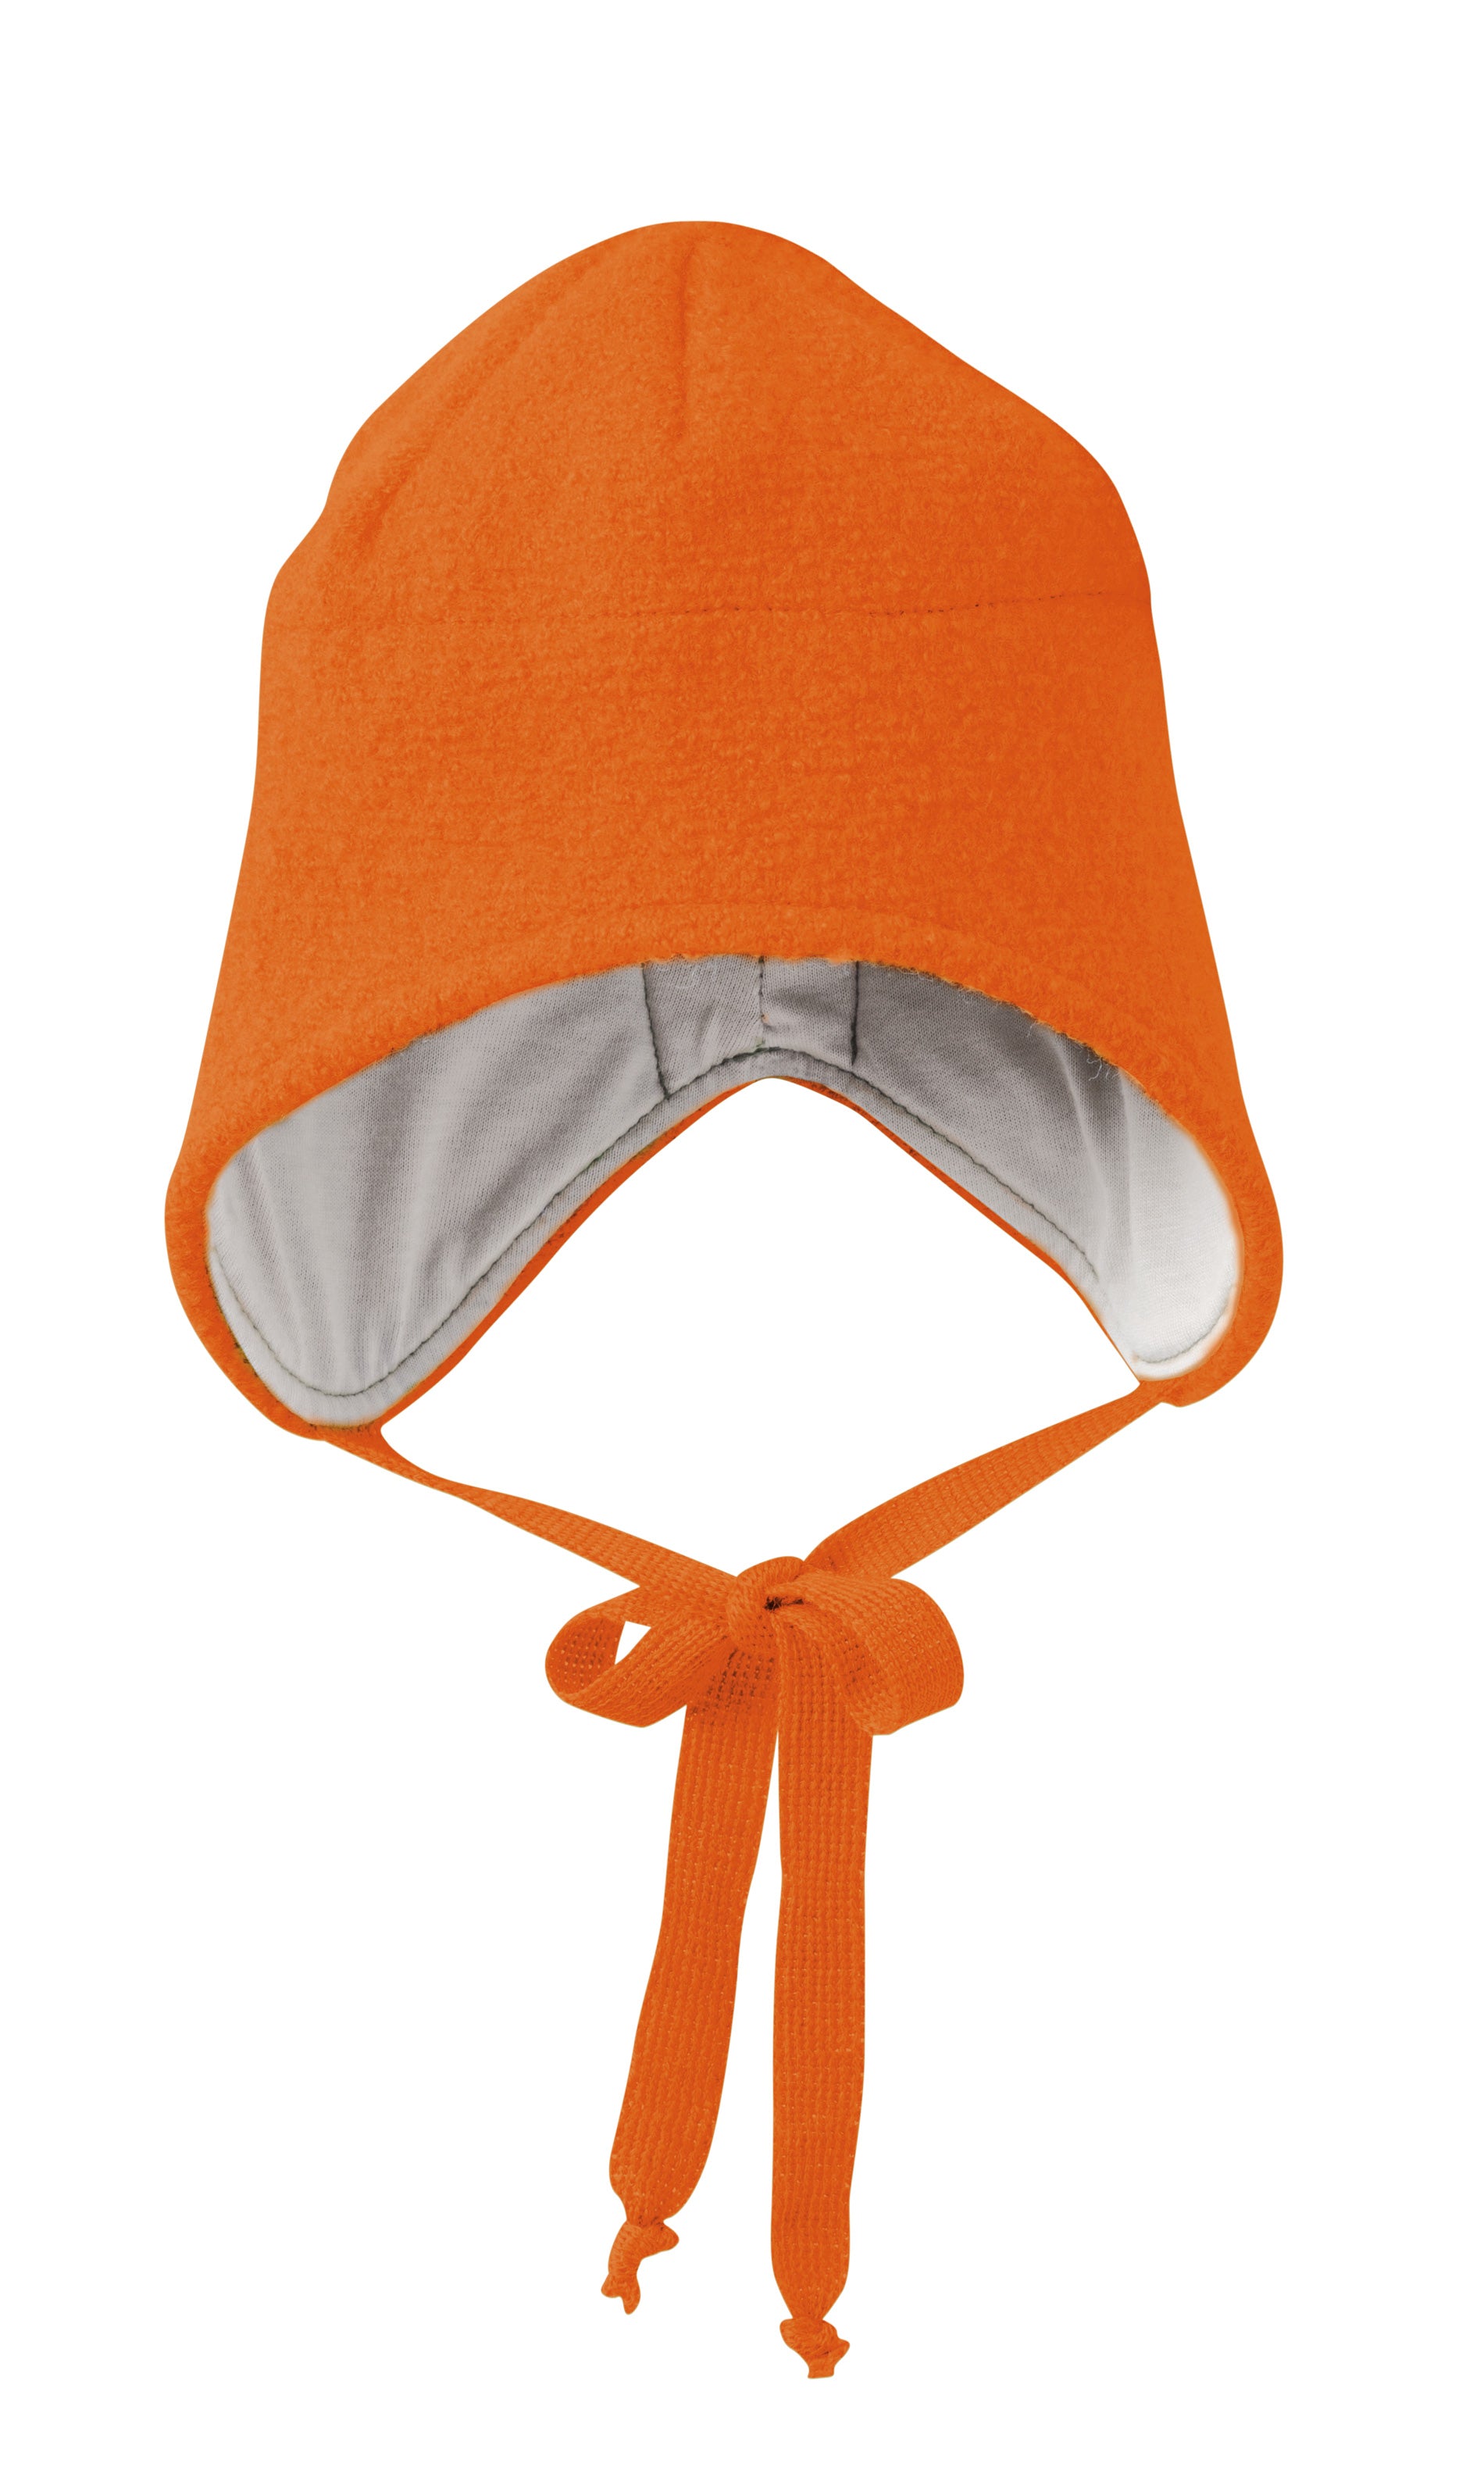 Sterkte Noordoosten kiespijn Disana Boiled Wool Hat Orange - Muts Gekookte Wol Oranje - GOEDvanToen -  Eerlijke & biologische kinderkleding en babykleding